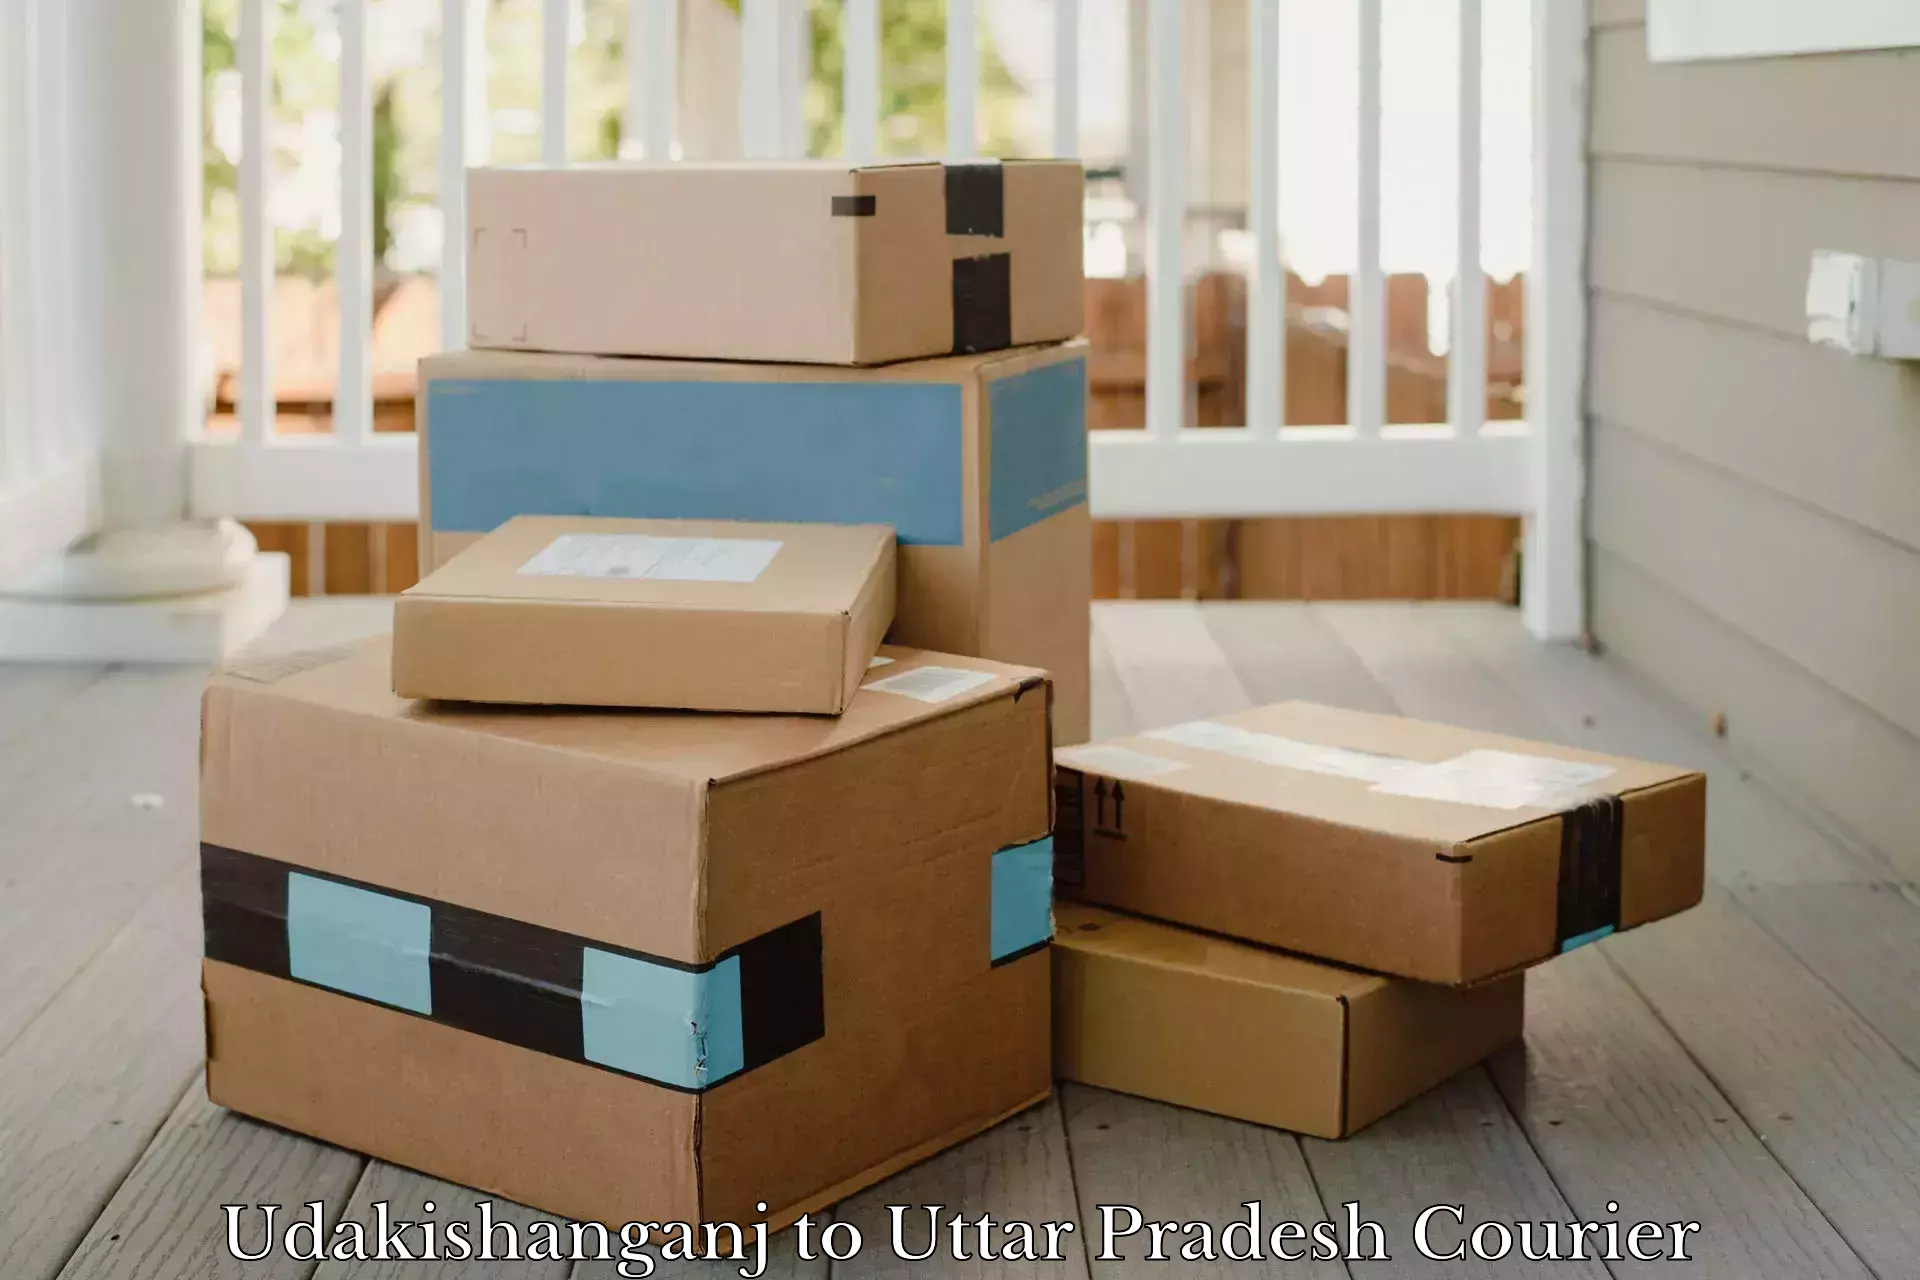 On-demand shipping options Udakishanganj to Jagdishpur Amethi